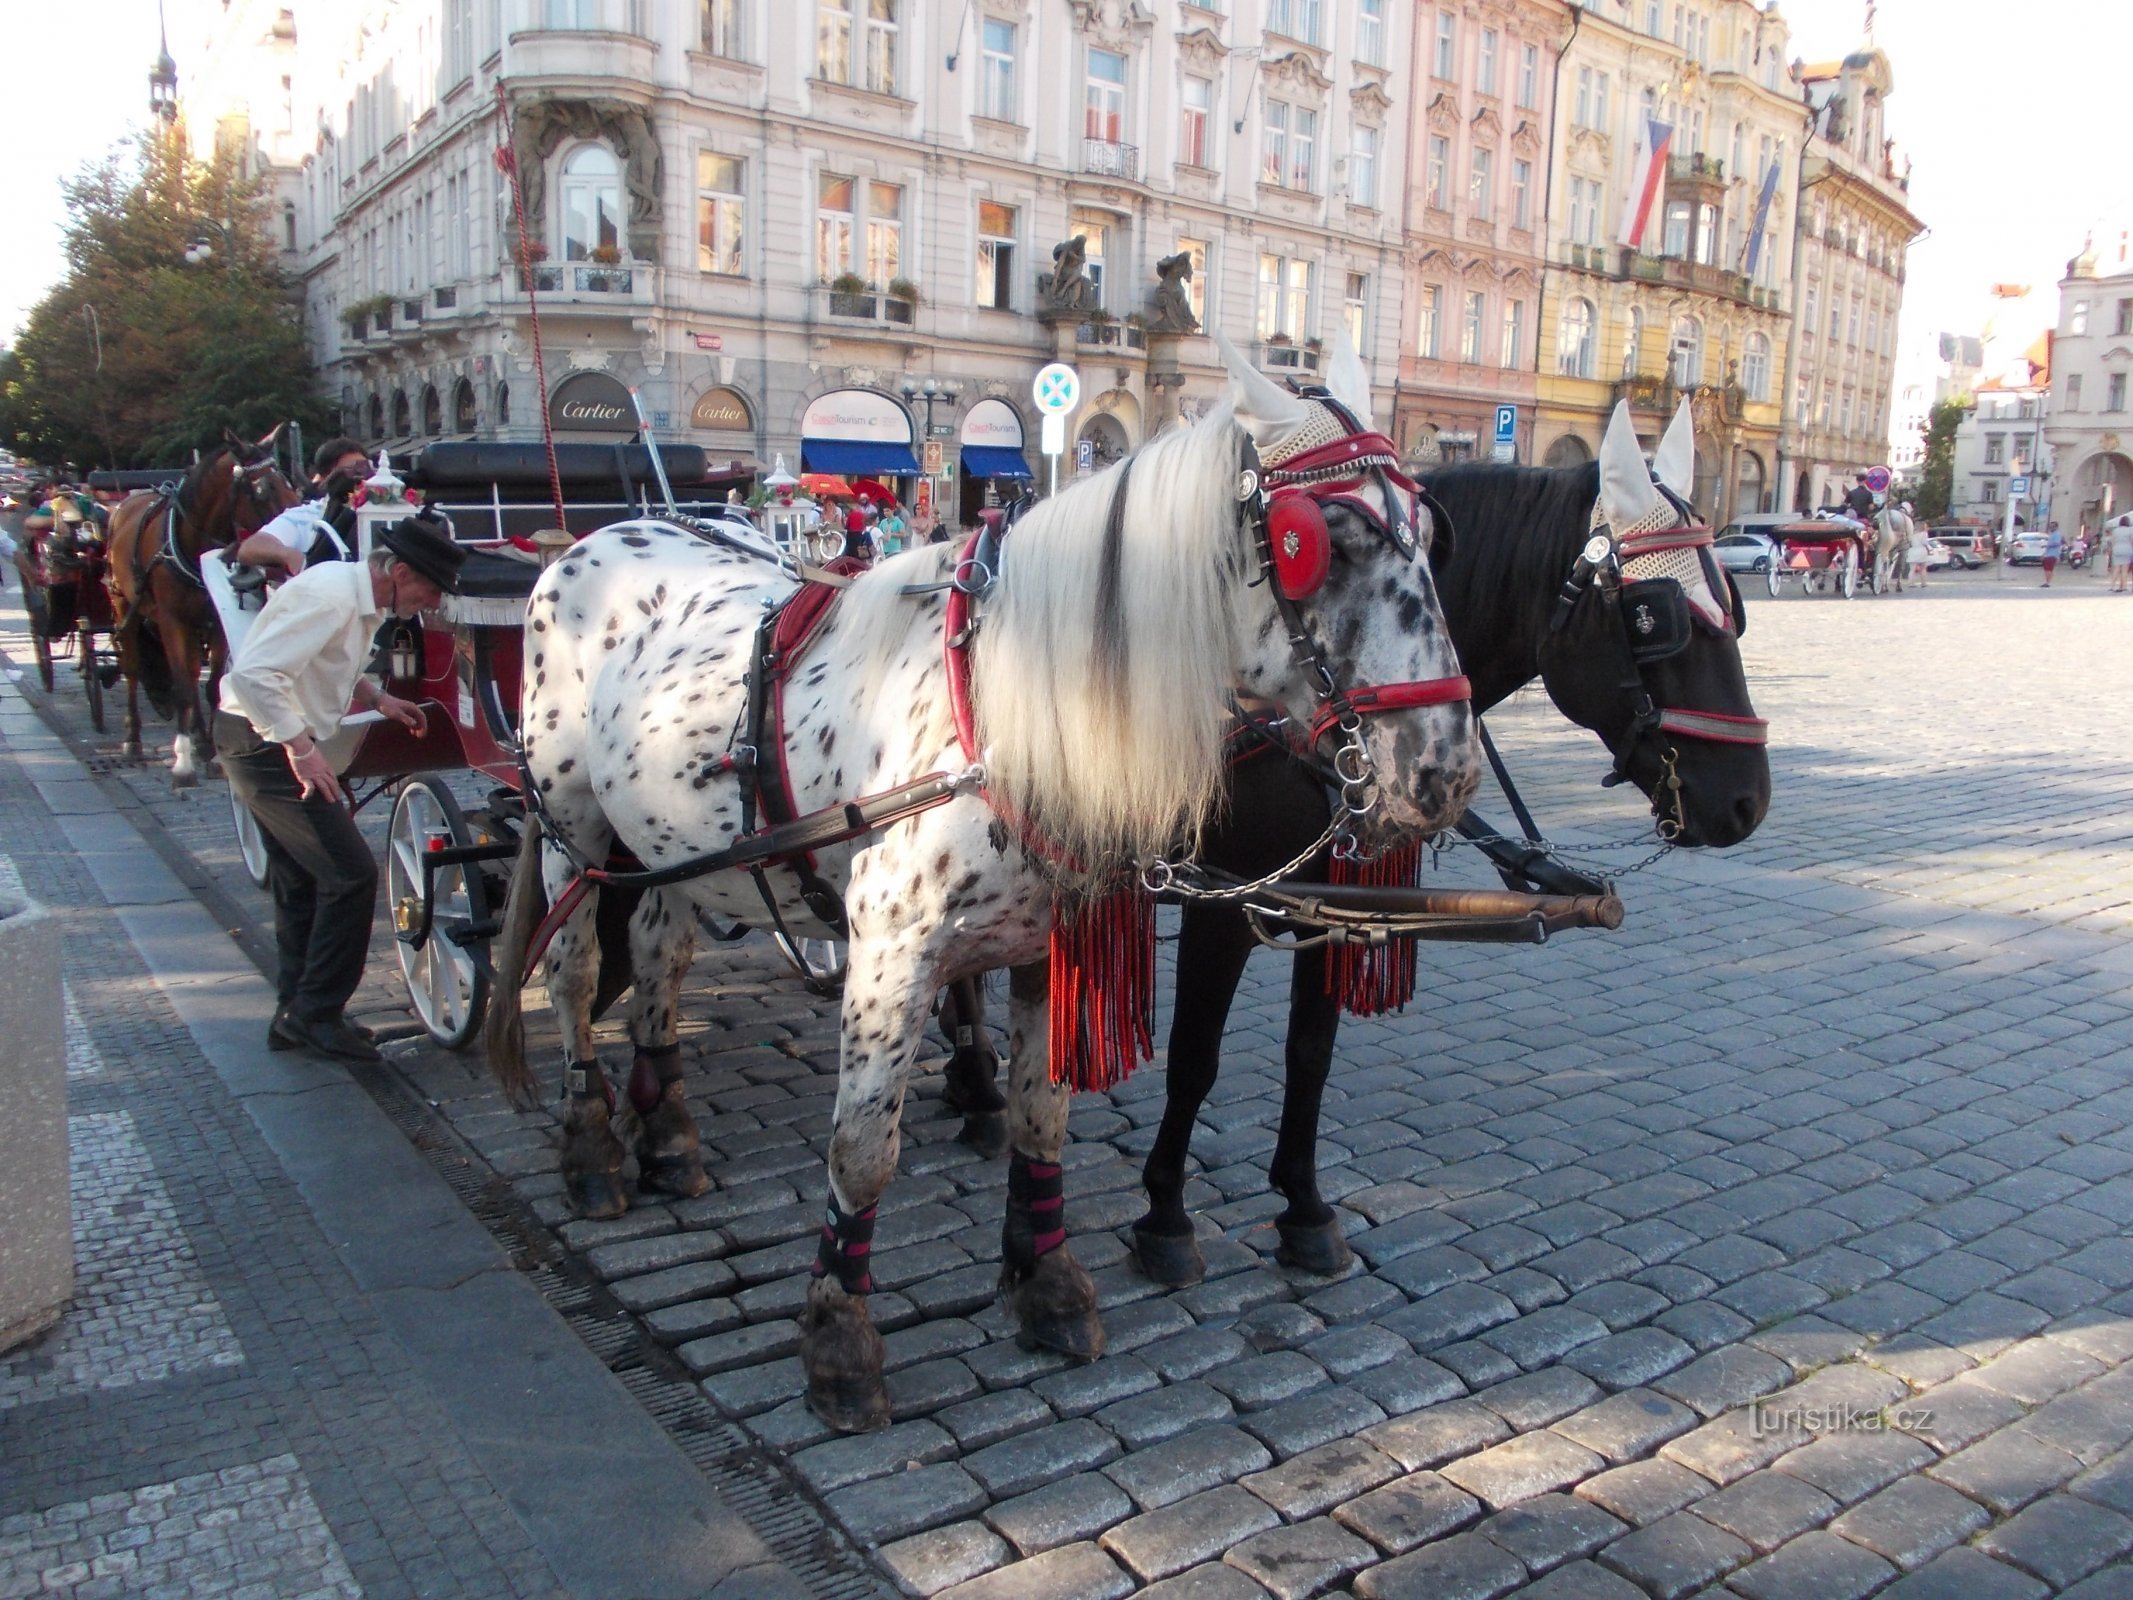 kom in och låt dig köras runt i det antika Prag